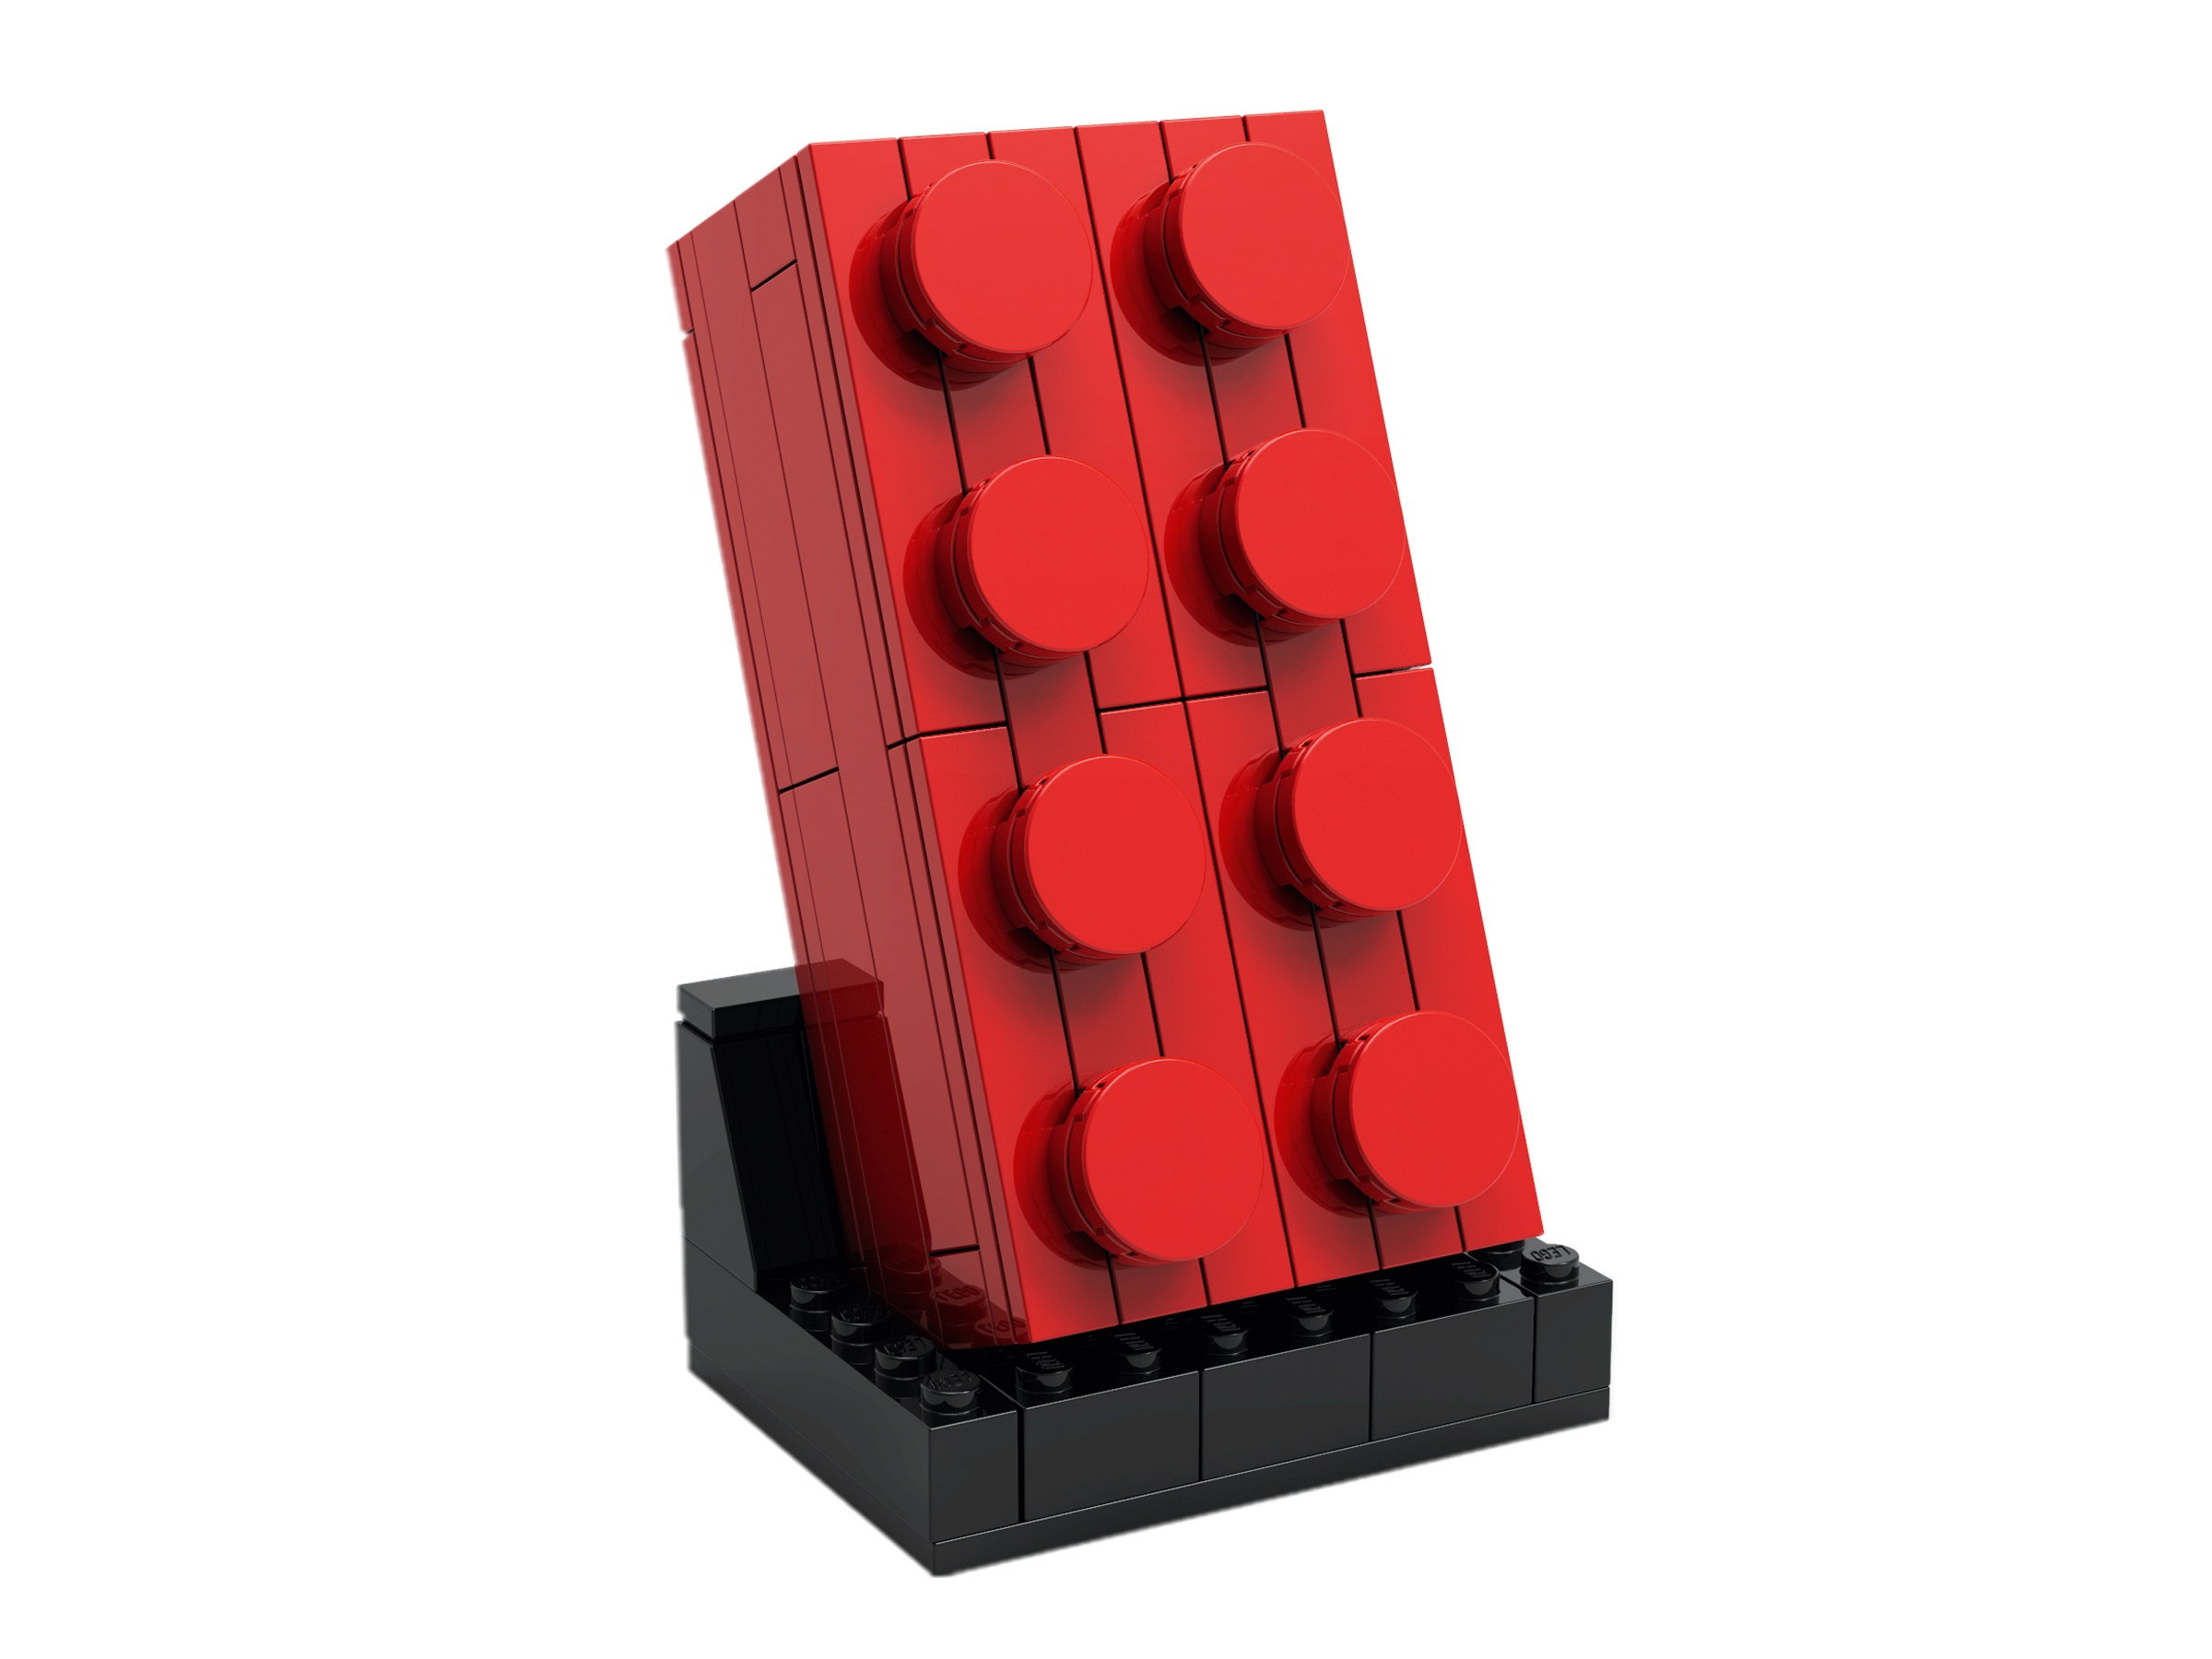 buy lego blocks